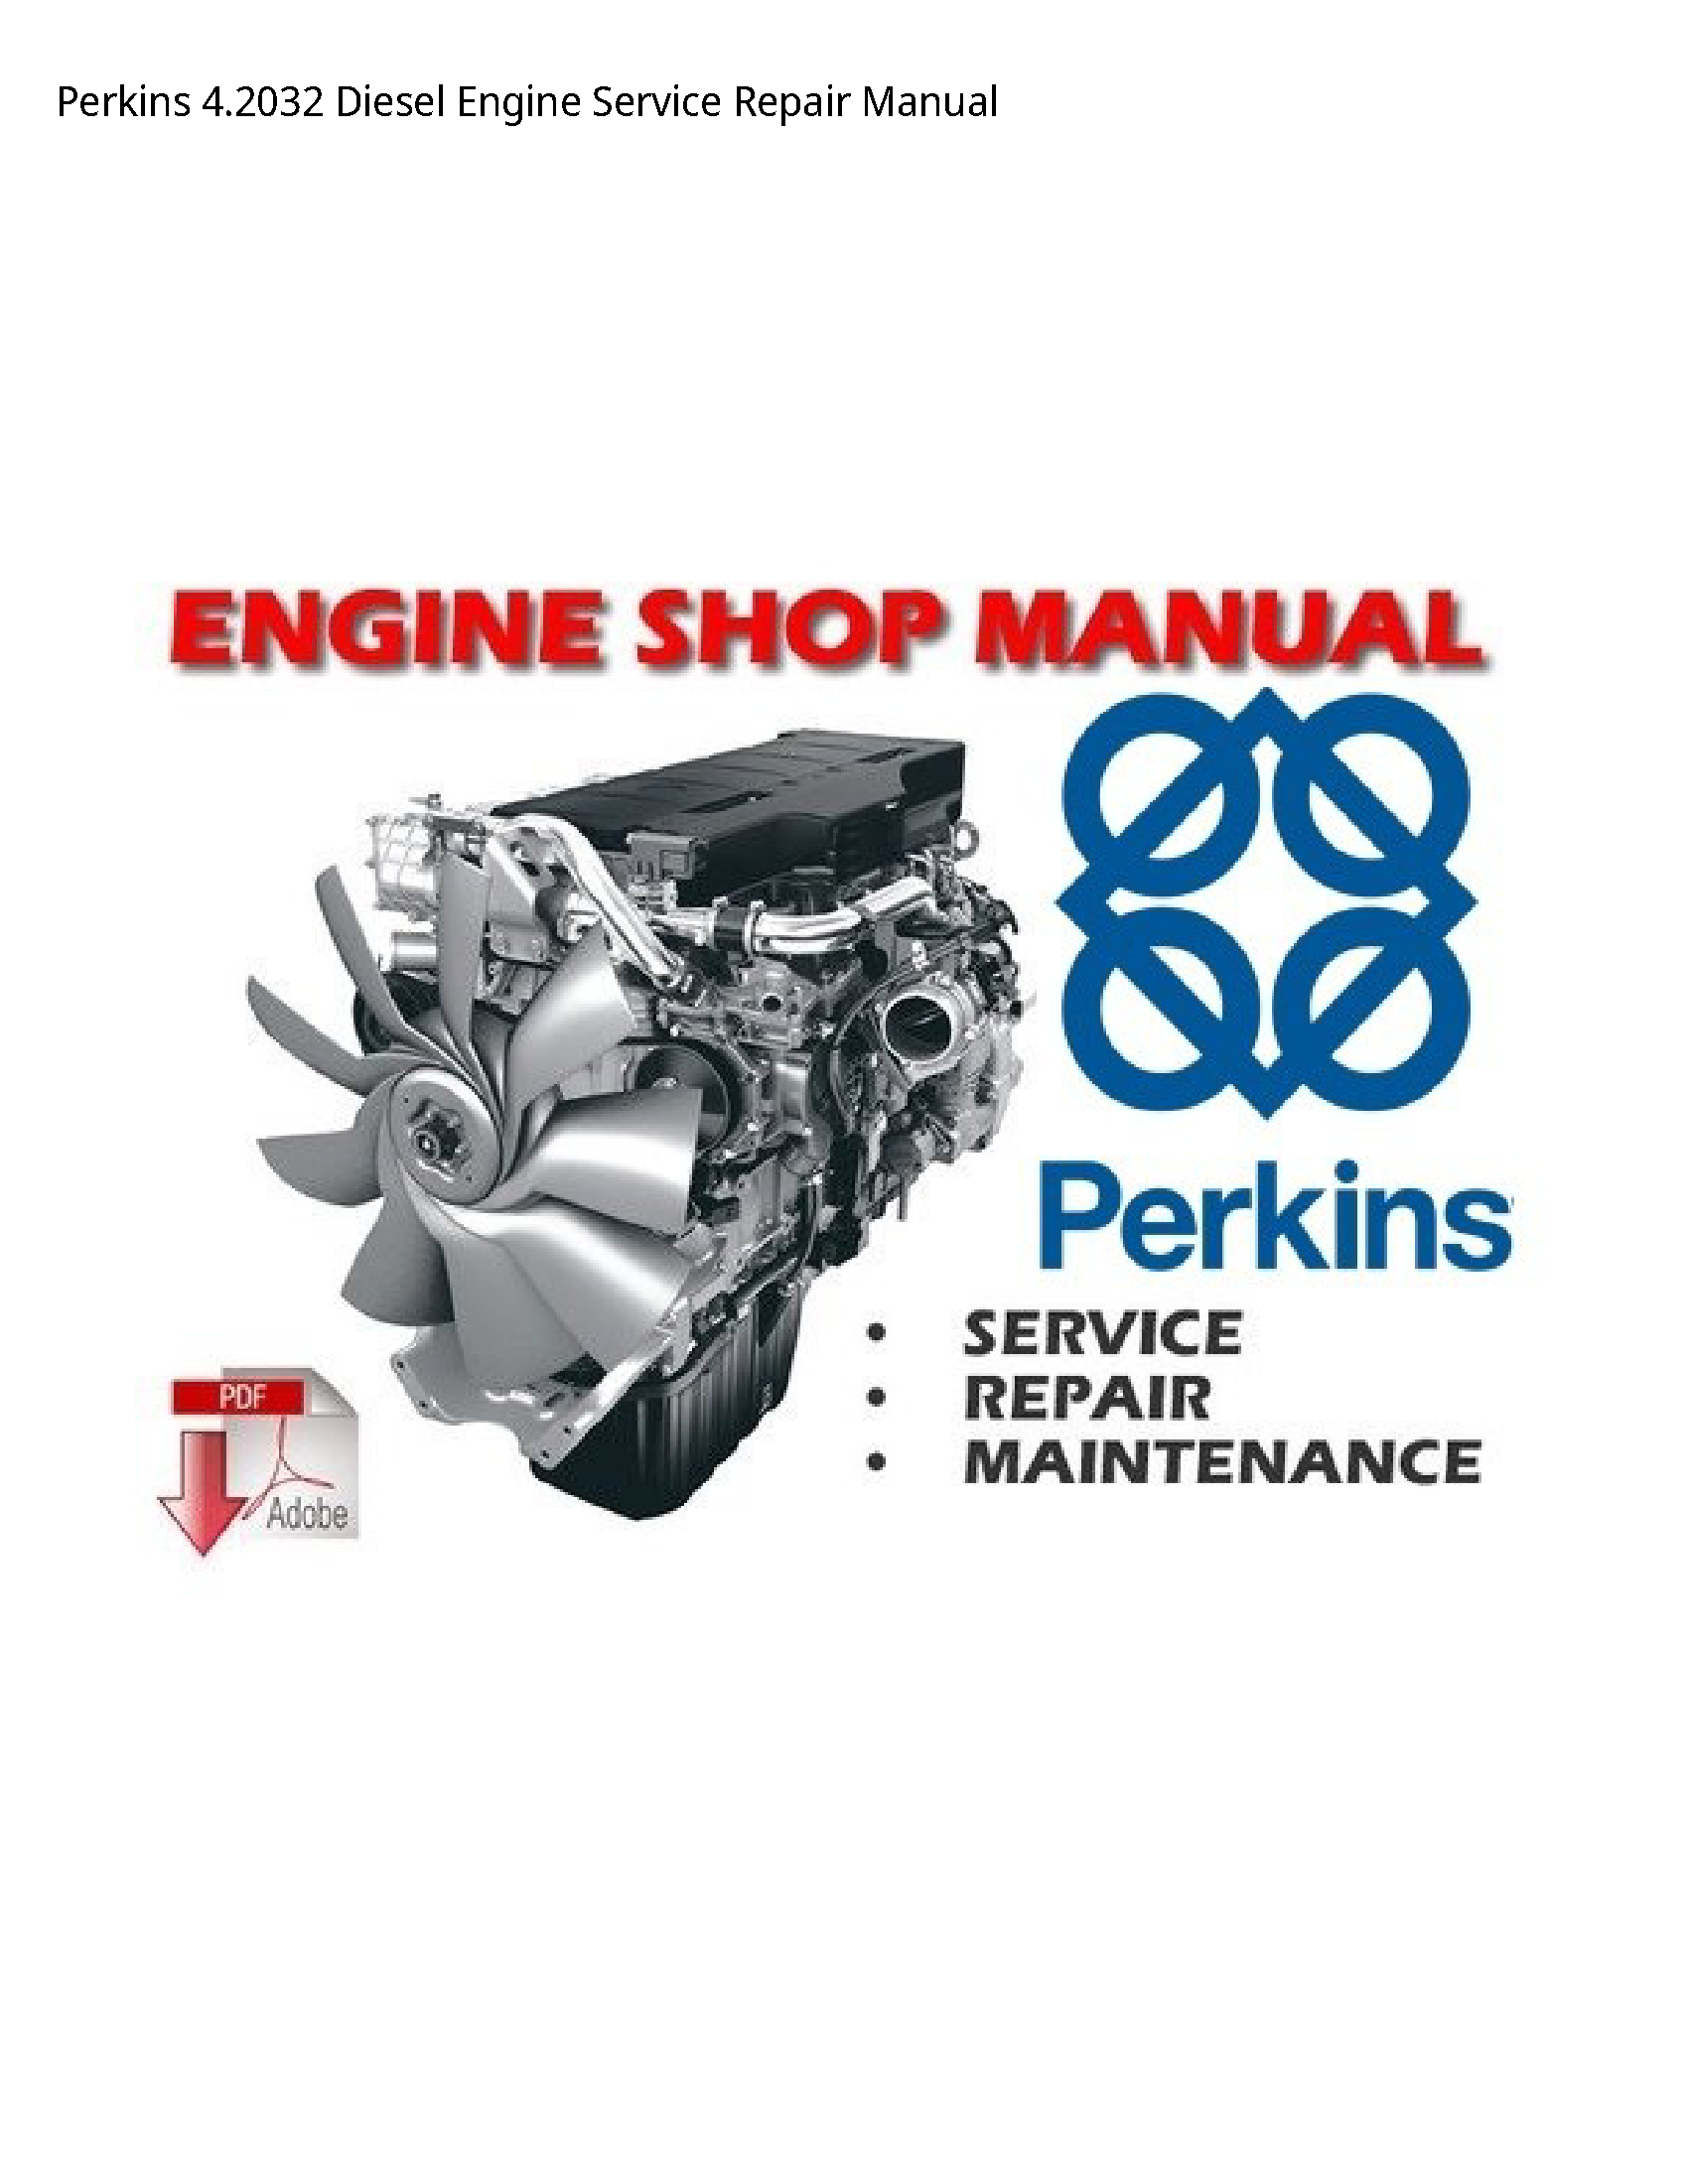 Perkins 4.2032 Diesel Engine manual